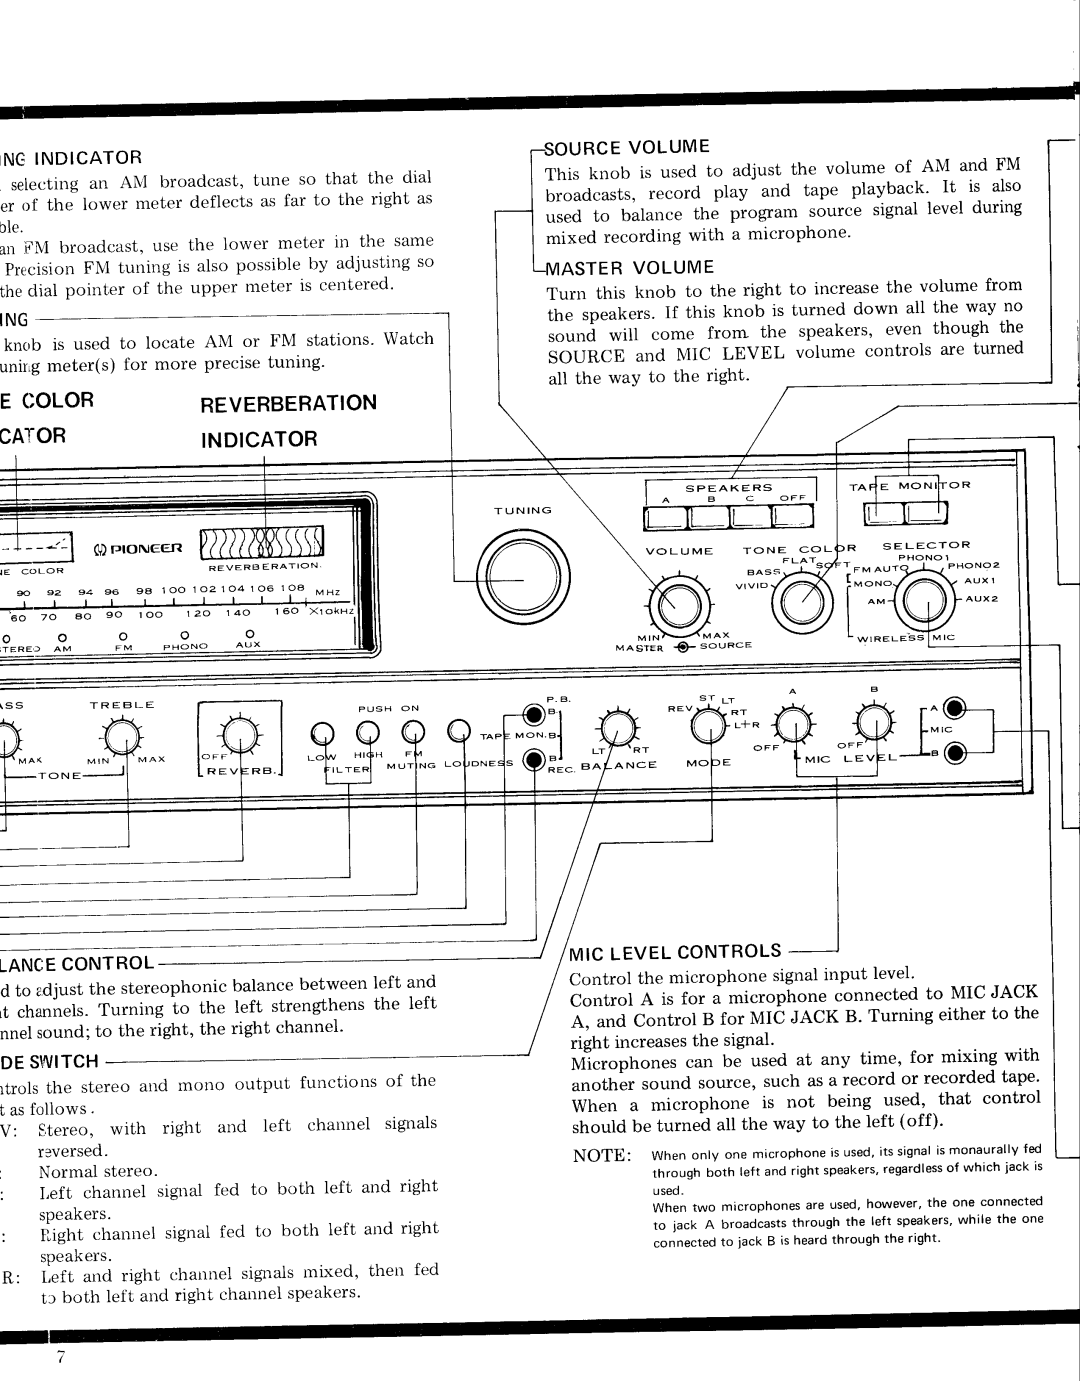 Pioneer SX-9000 service manual E Color, Reverberation, Cator, R C Ev O L U M E, A S T E Rv O L U M E, Indicator 